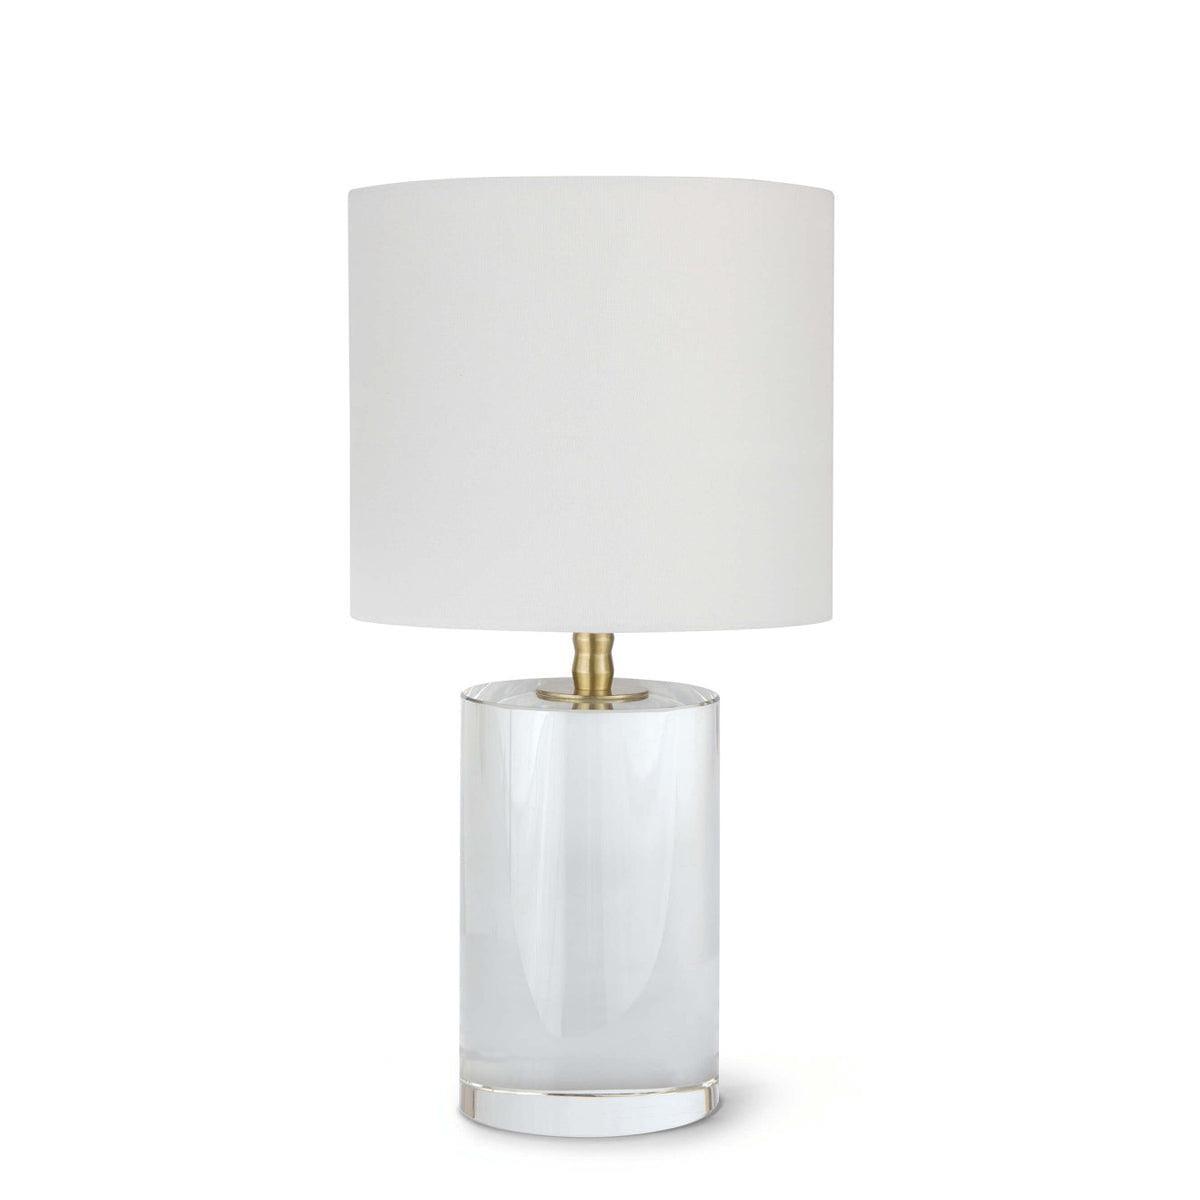 Regina Andrew - Juliet Table Lamp - 13-1286 | Montreal Lighting & Hardware